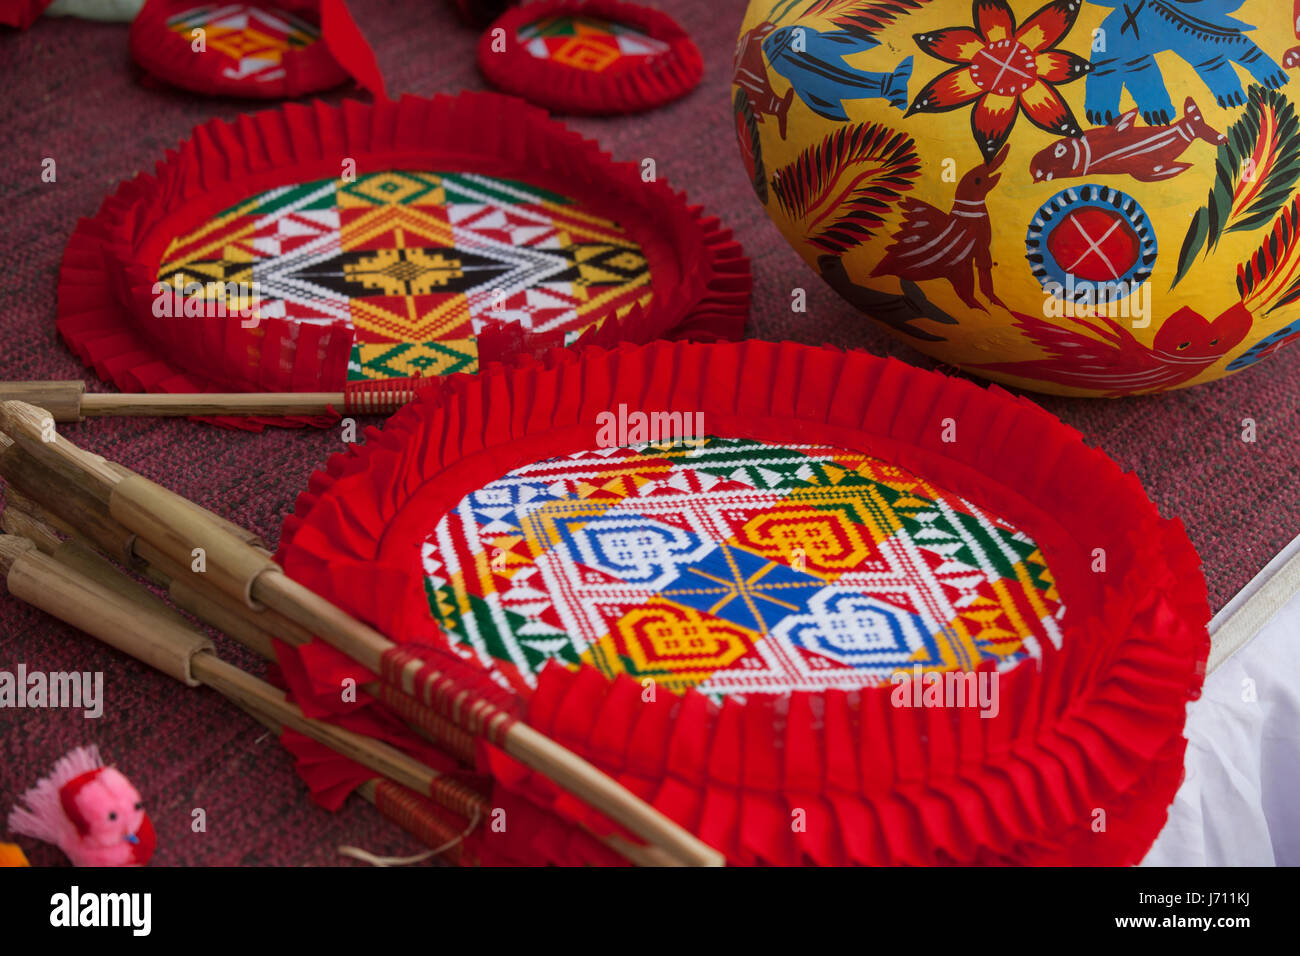 Handwerkliche Produkte anzeigen "Karu Mela" (Crafts fair) in den Räumlichkeiten der Bangla Akademie in Dhaka, Bangladesch. Stockfoto